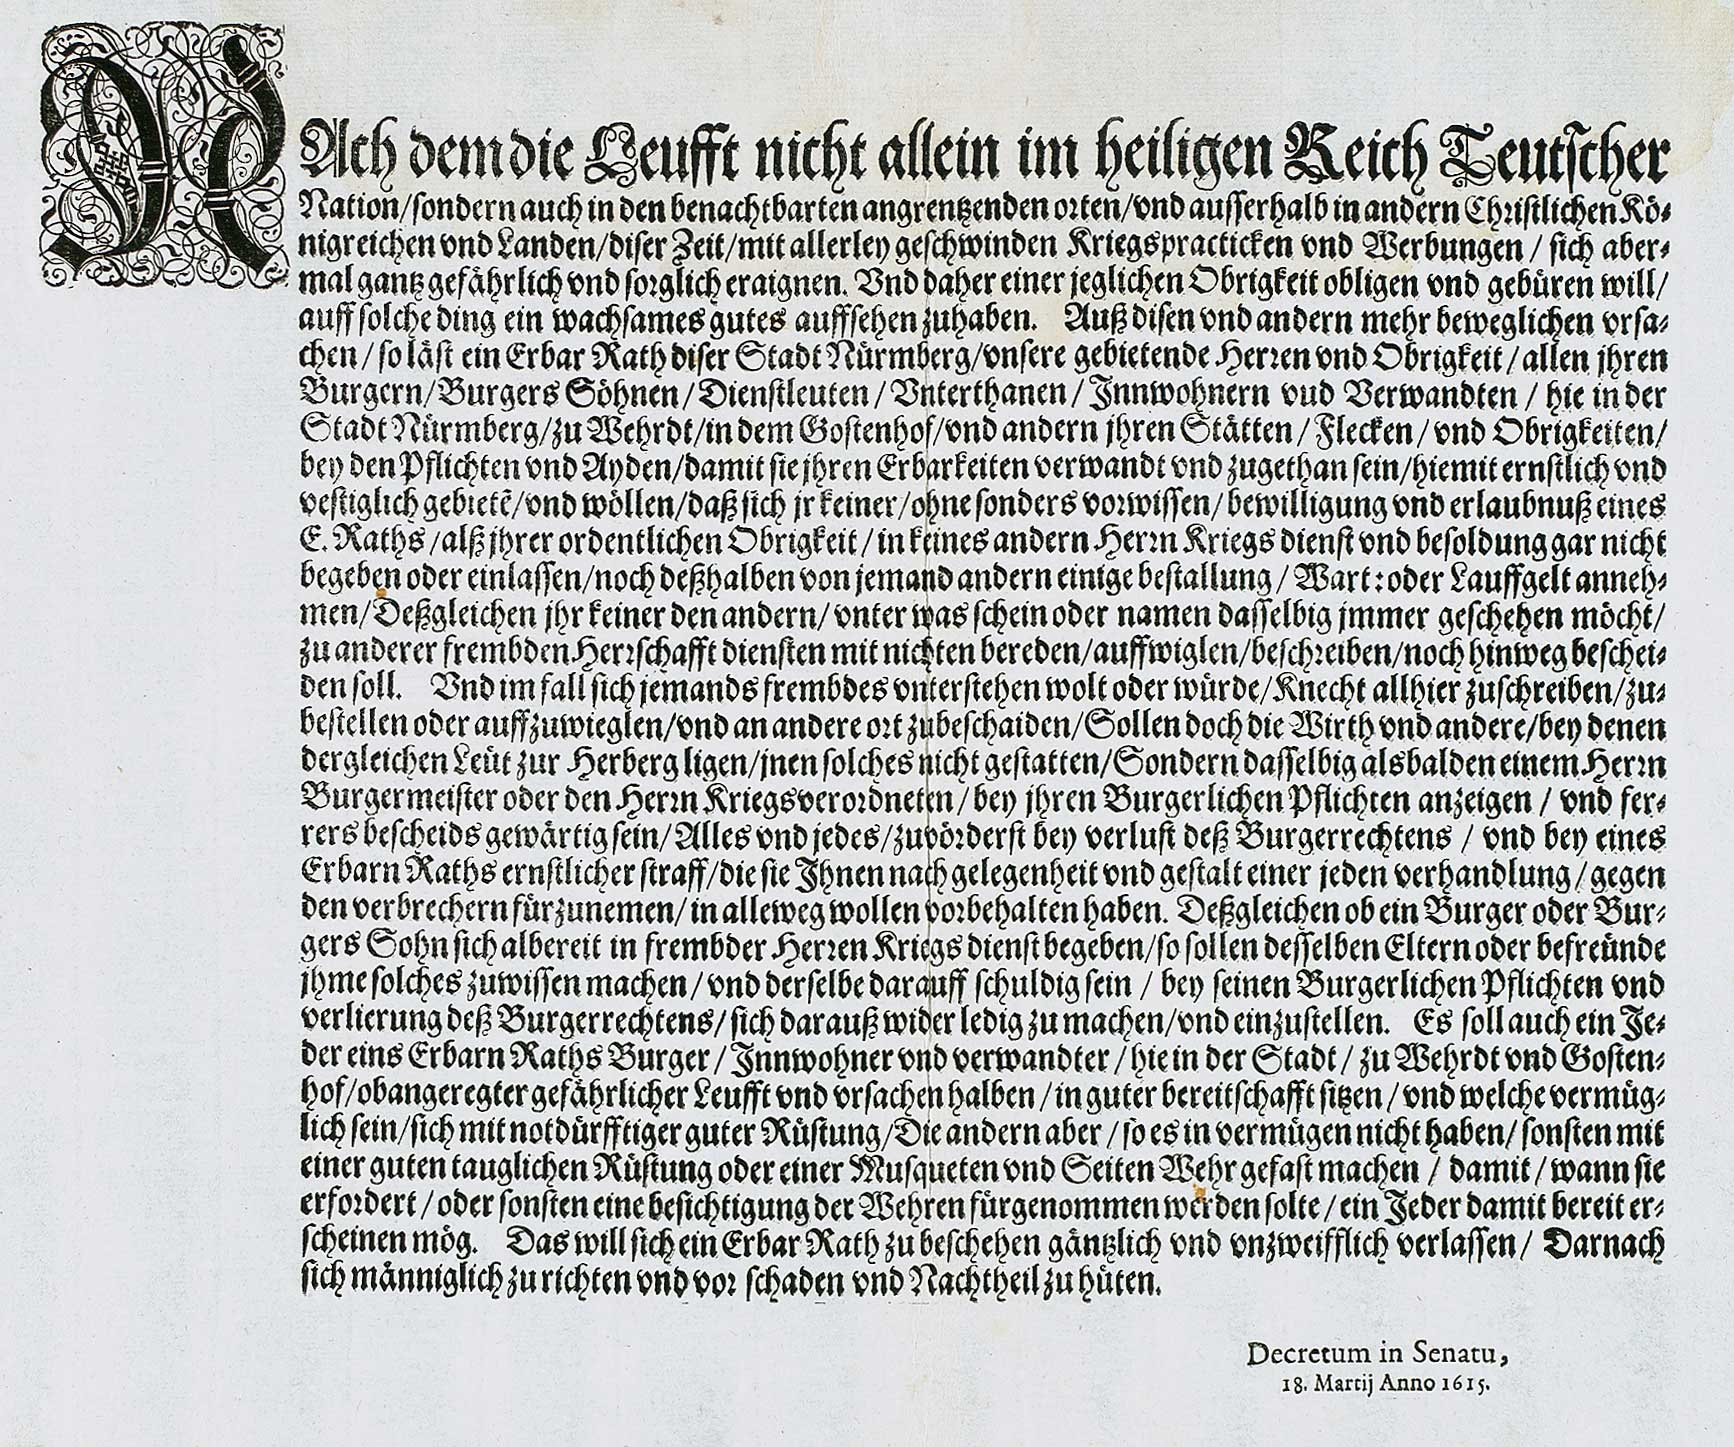 Verordnung betreffend fremde (Kriegs-)Dienste. (Nbg.), o.Dr. 1615. 4°. Satzspiegel 31 x 26 cm. 1 Bl.